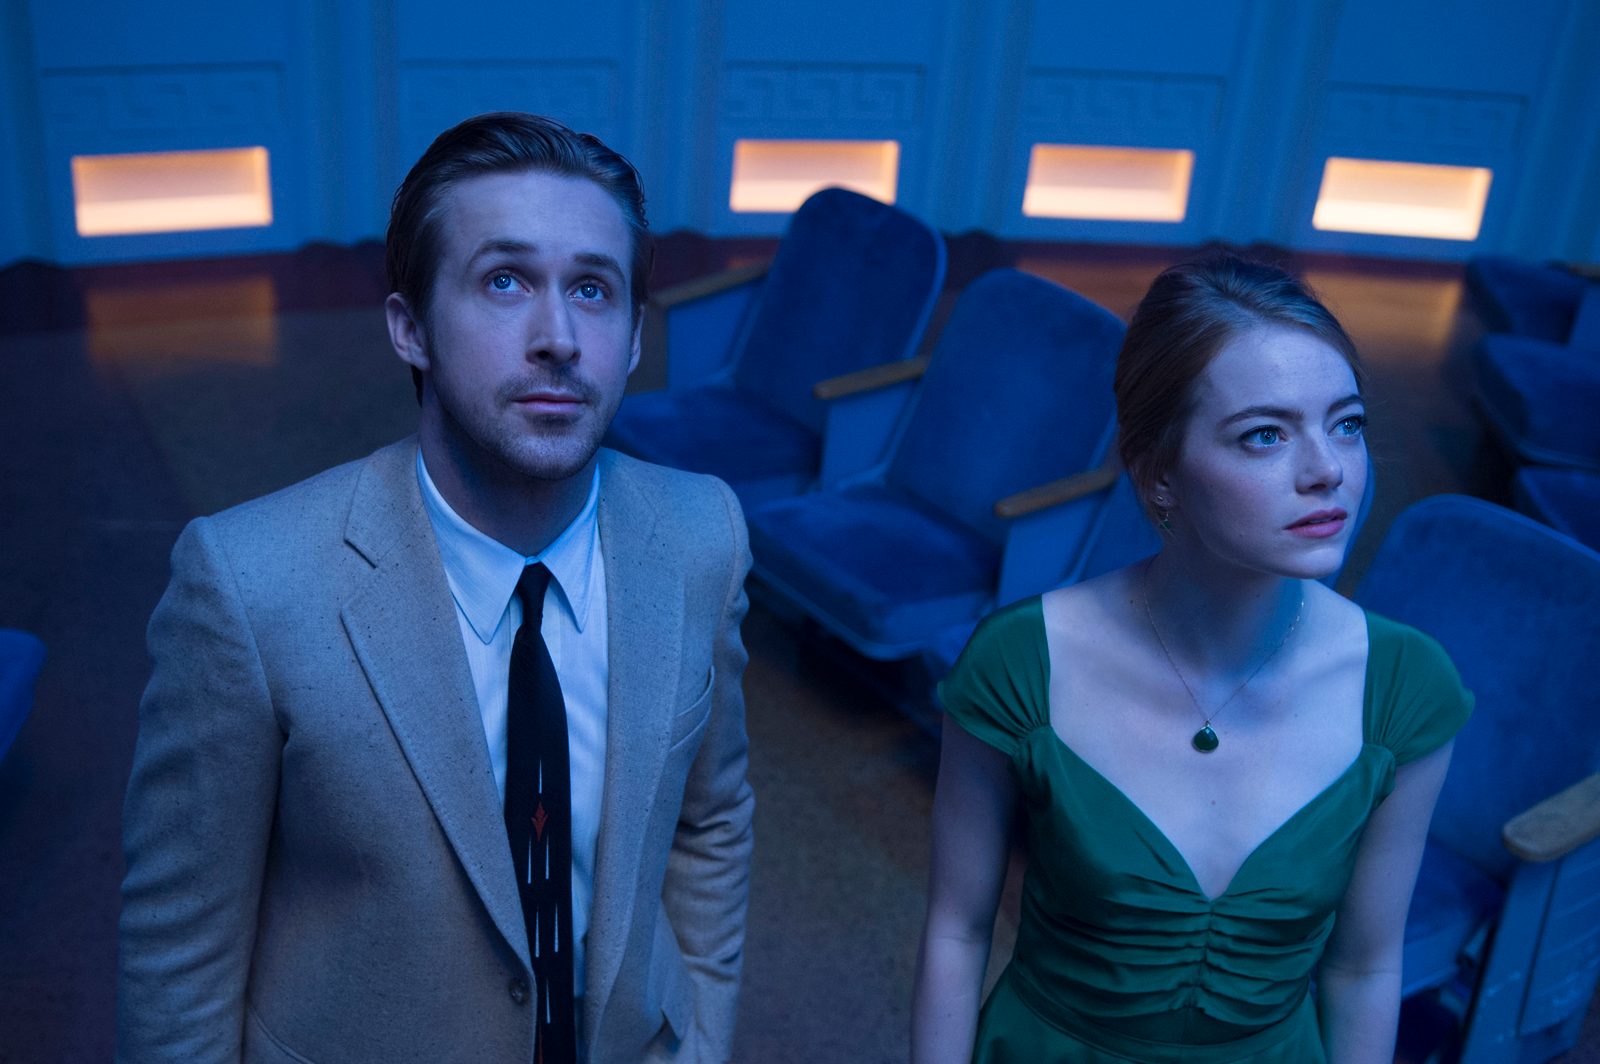 ‘La La Land’ ties record with 14 Oscar nominations